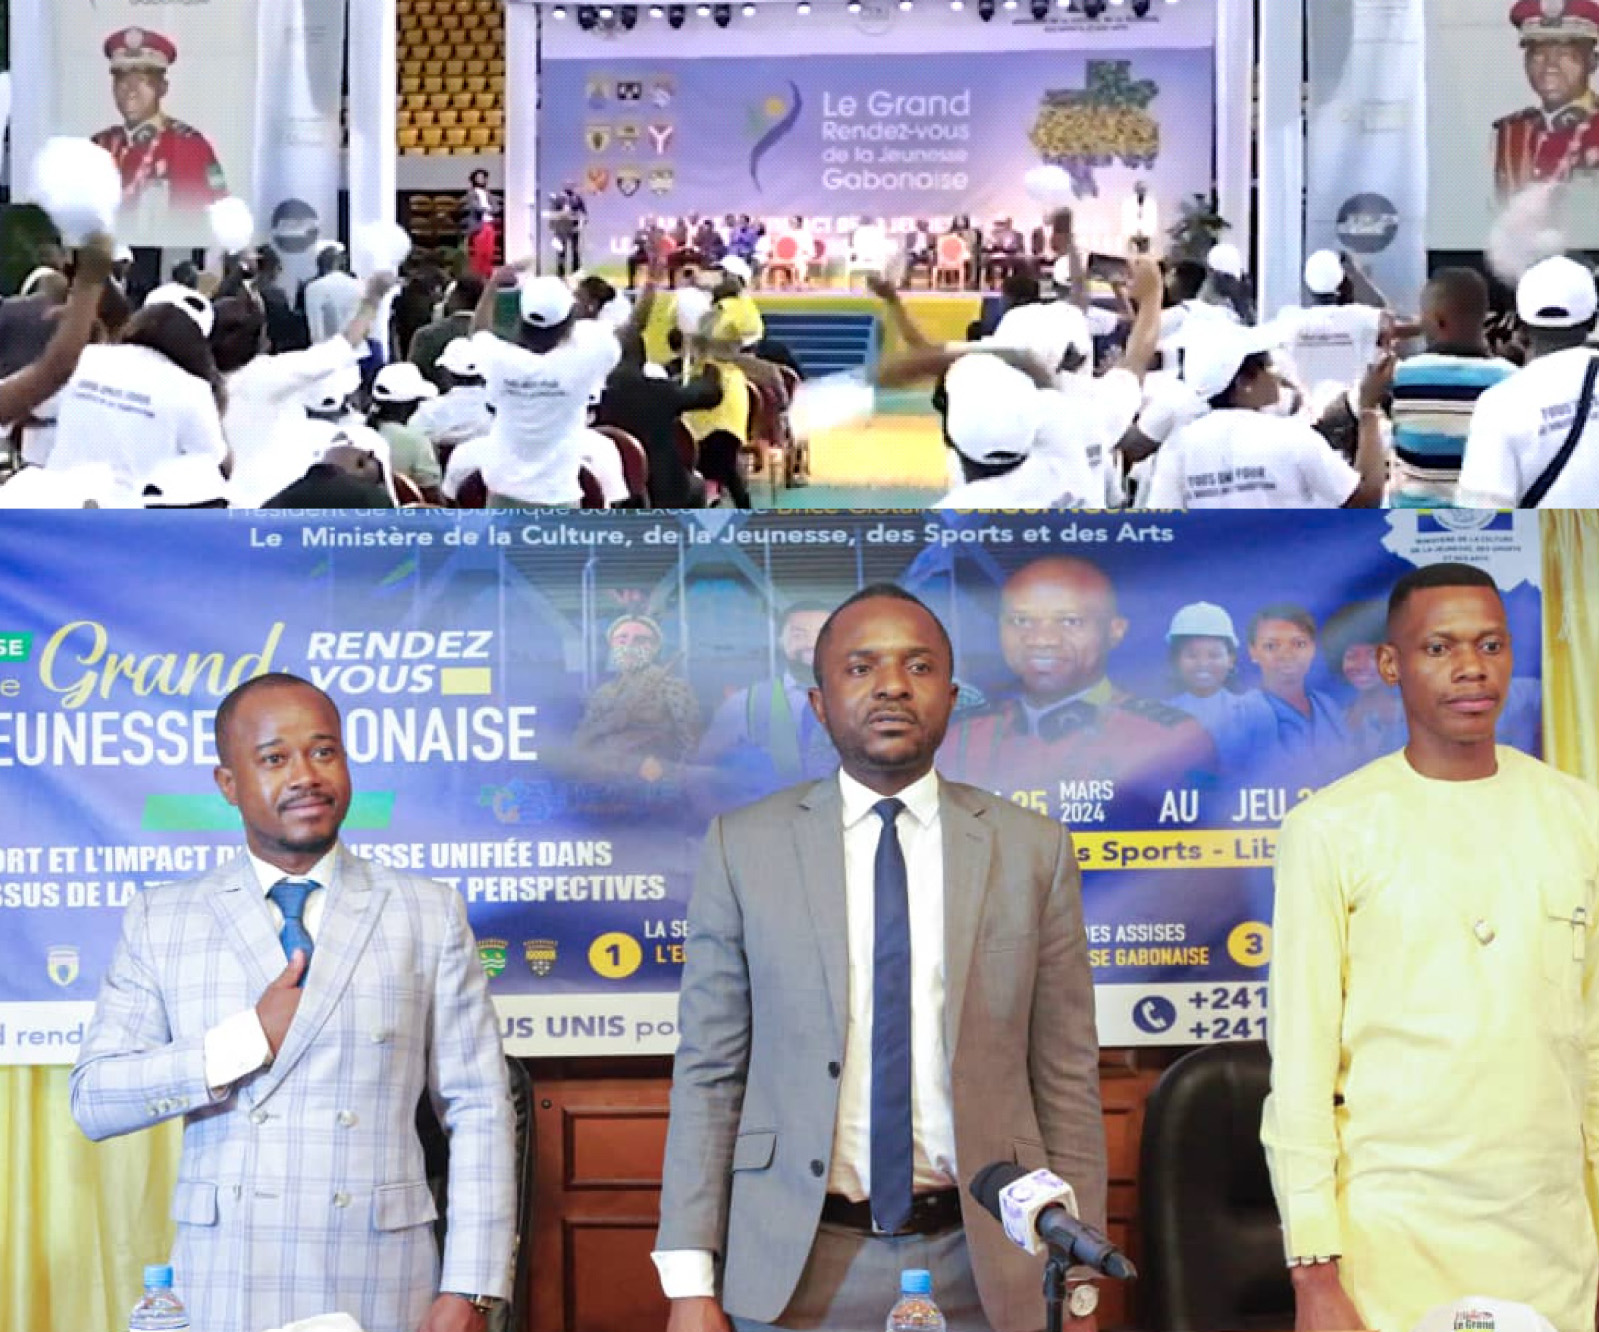 Fiasco du rassemblement de la jeunesse gabonaise : corruption et incompétence dévoilées